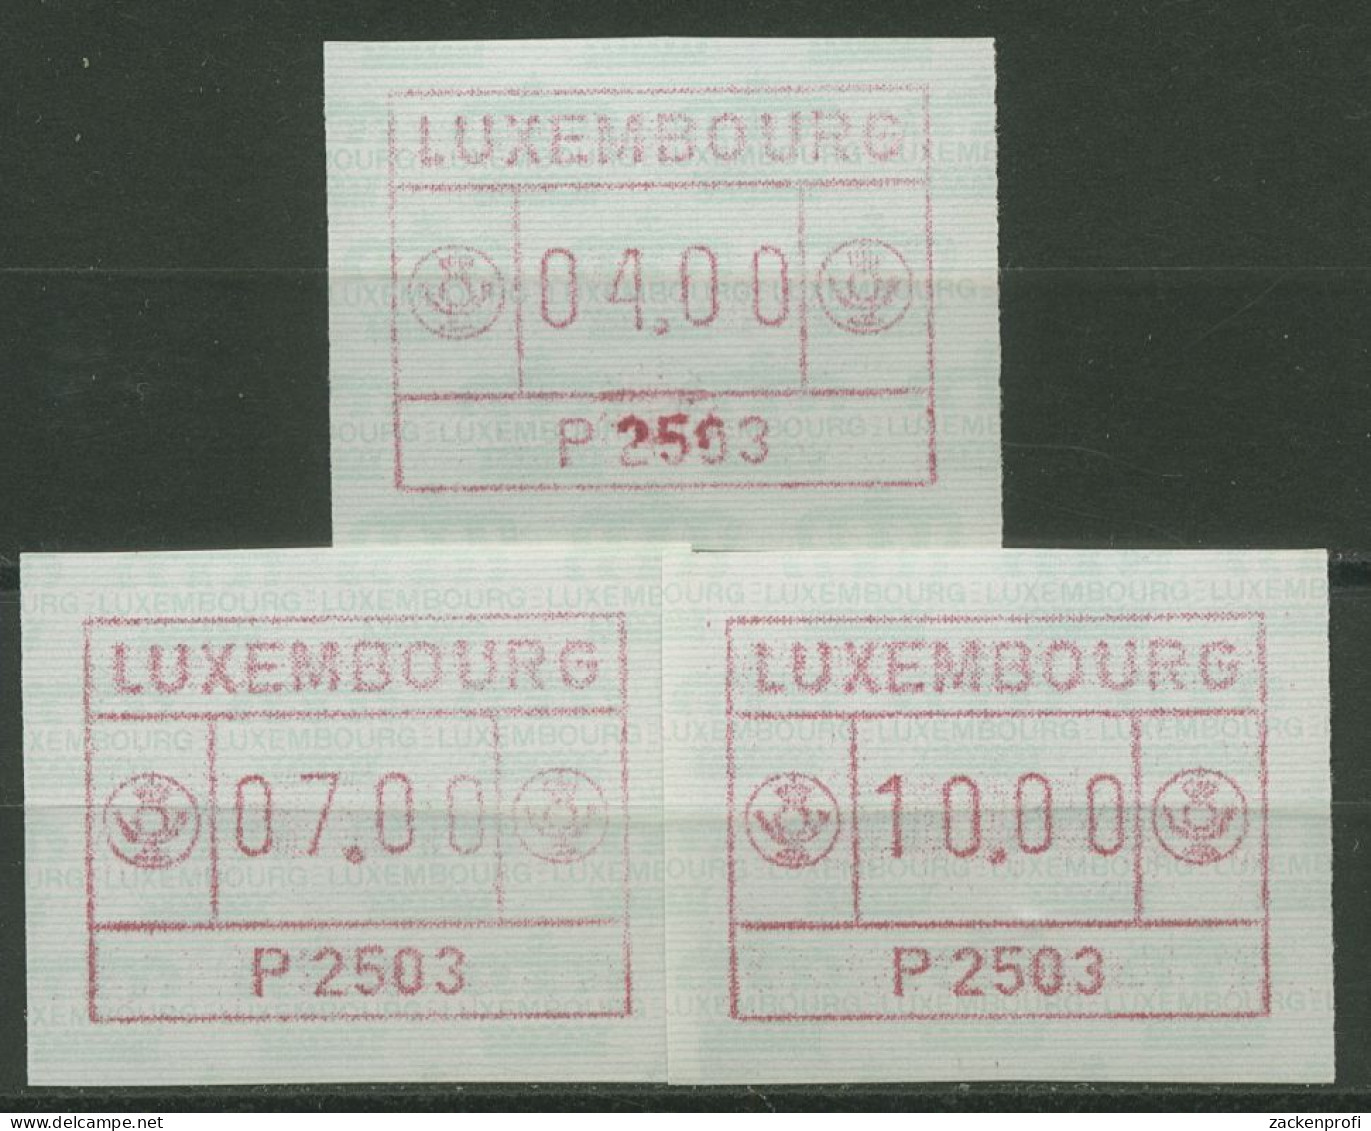 Luxemburg 1983 Automatenmarke Automat P 2503 Satz 1.3 B S1 Postfrisch - Vignette